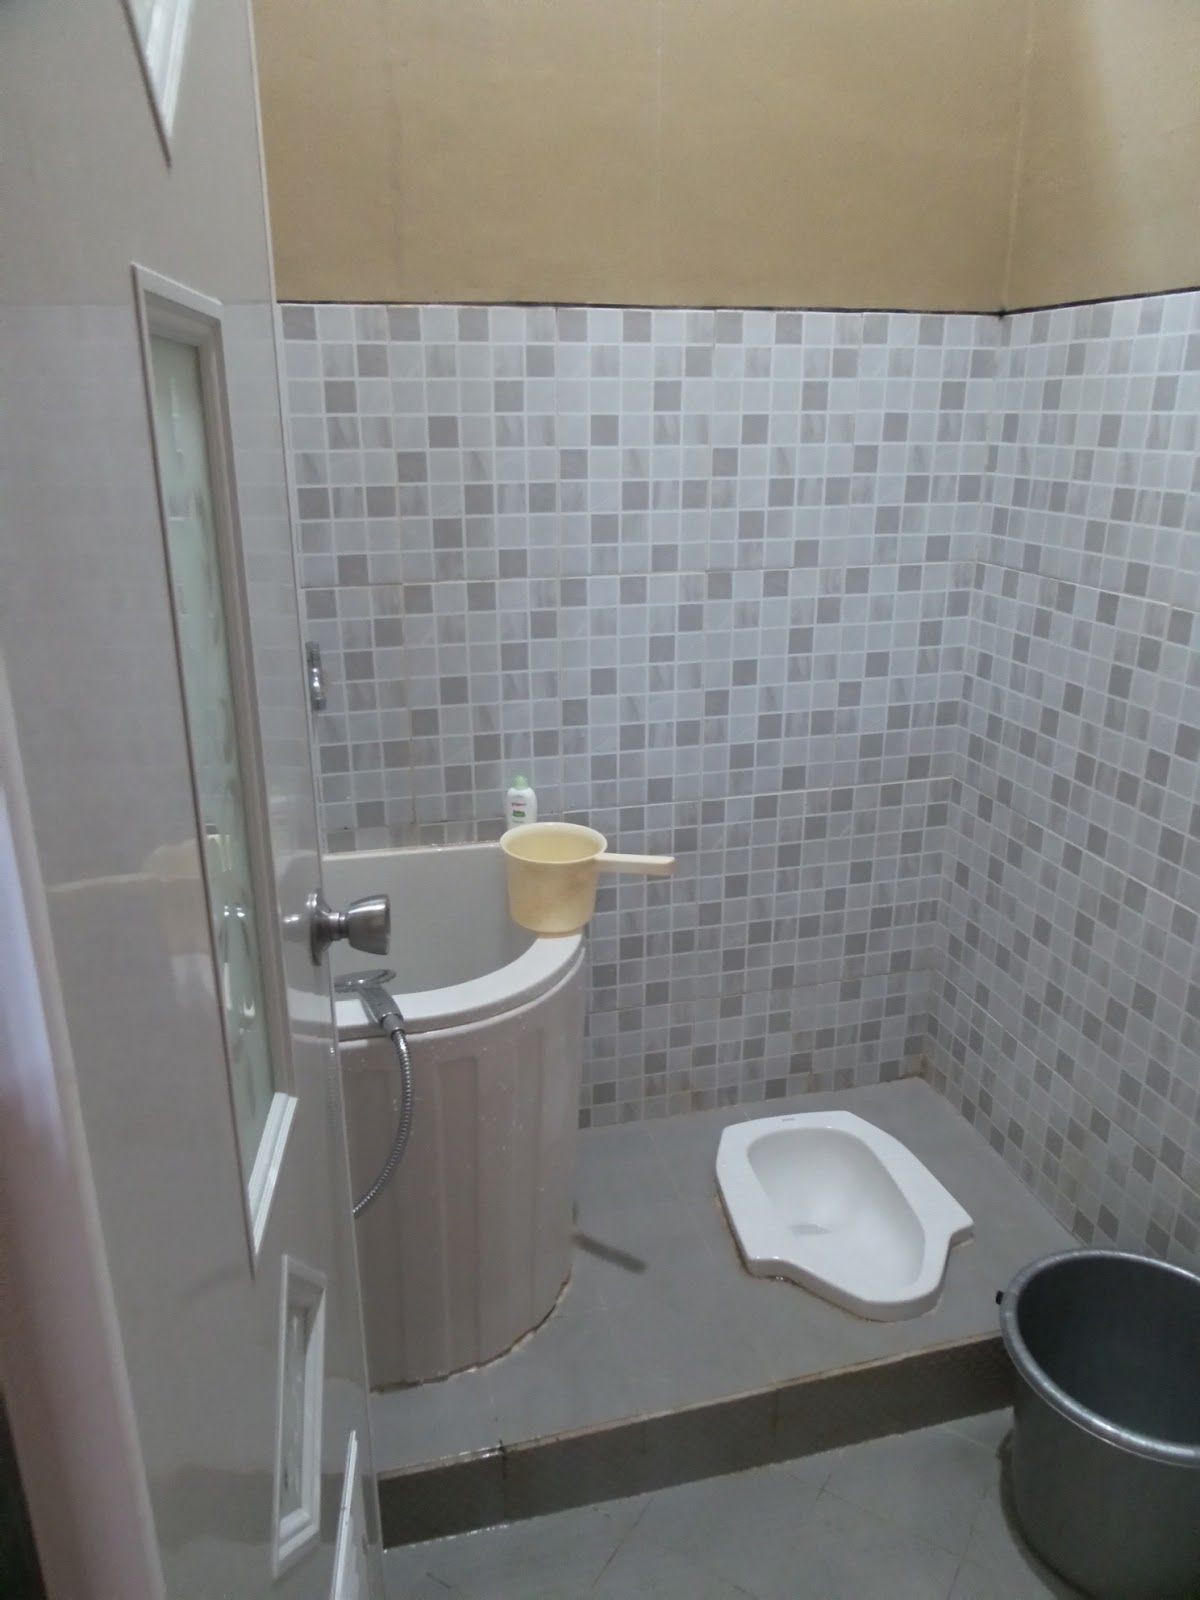 desain kamar mandi wc jongkok minimalis desain kamar dan